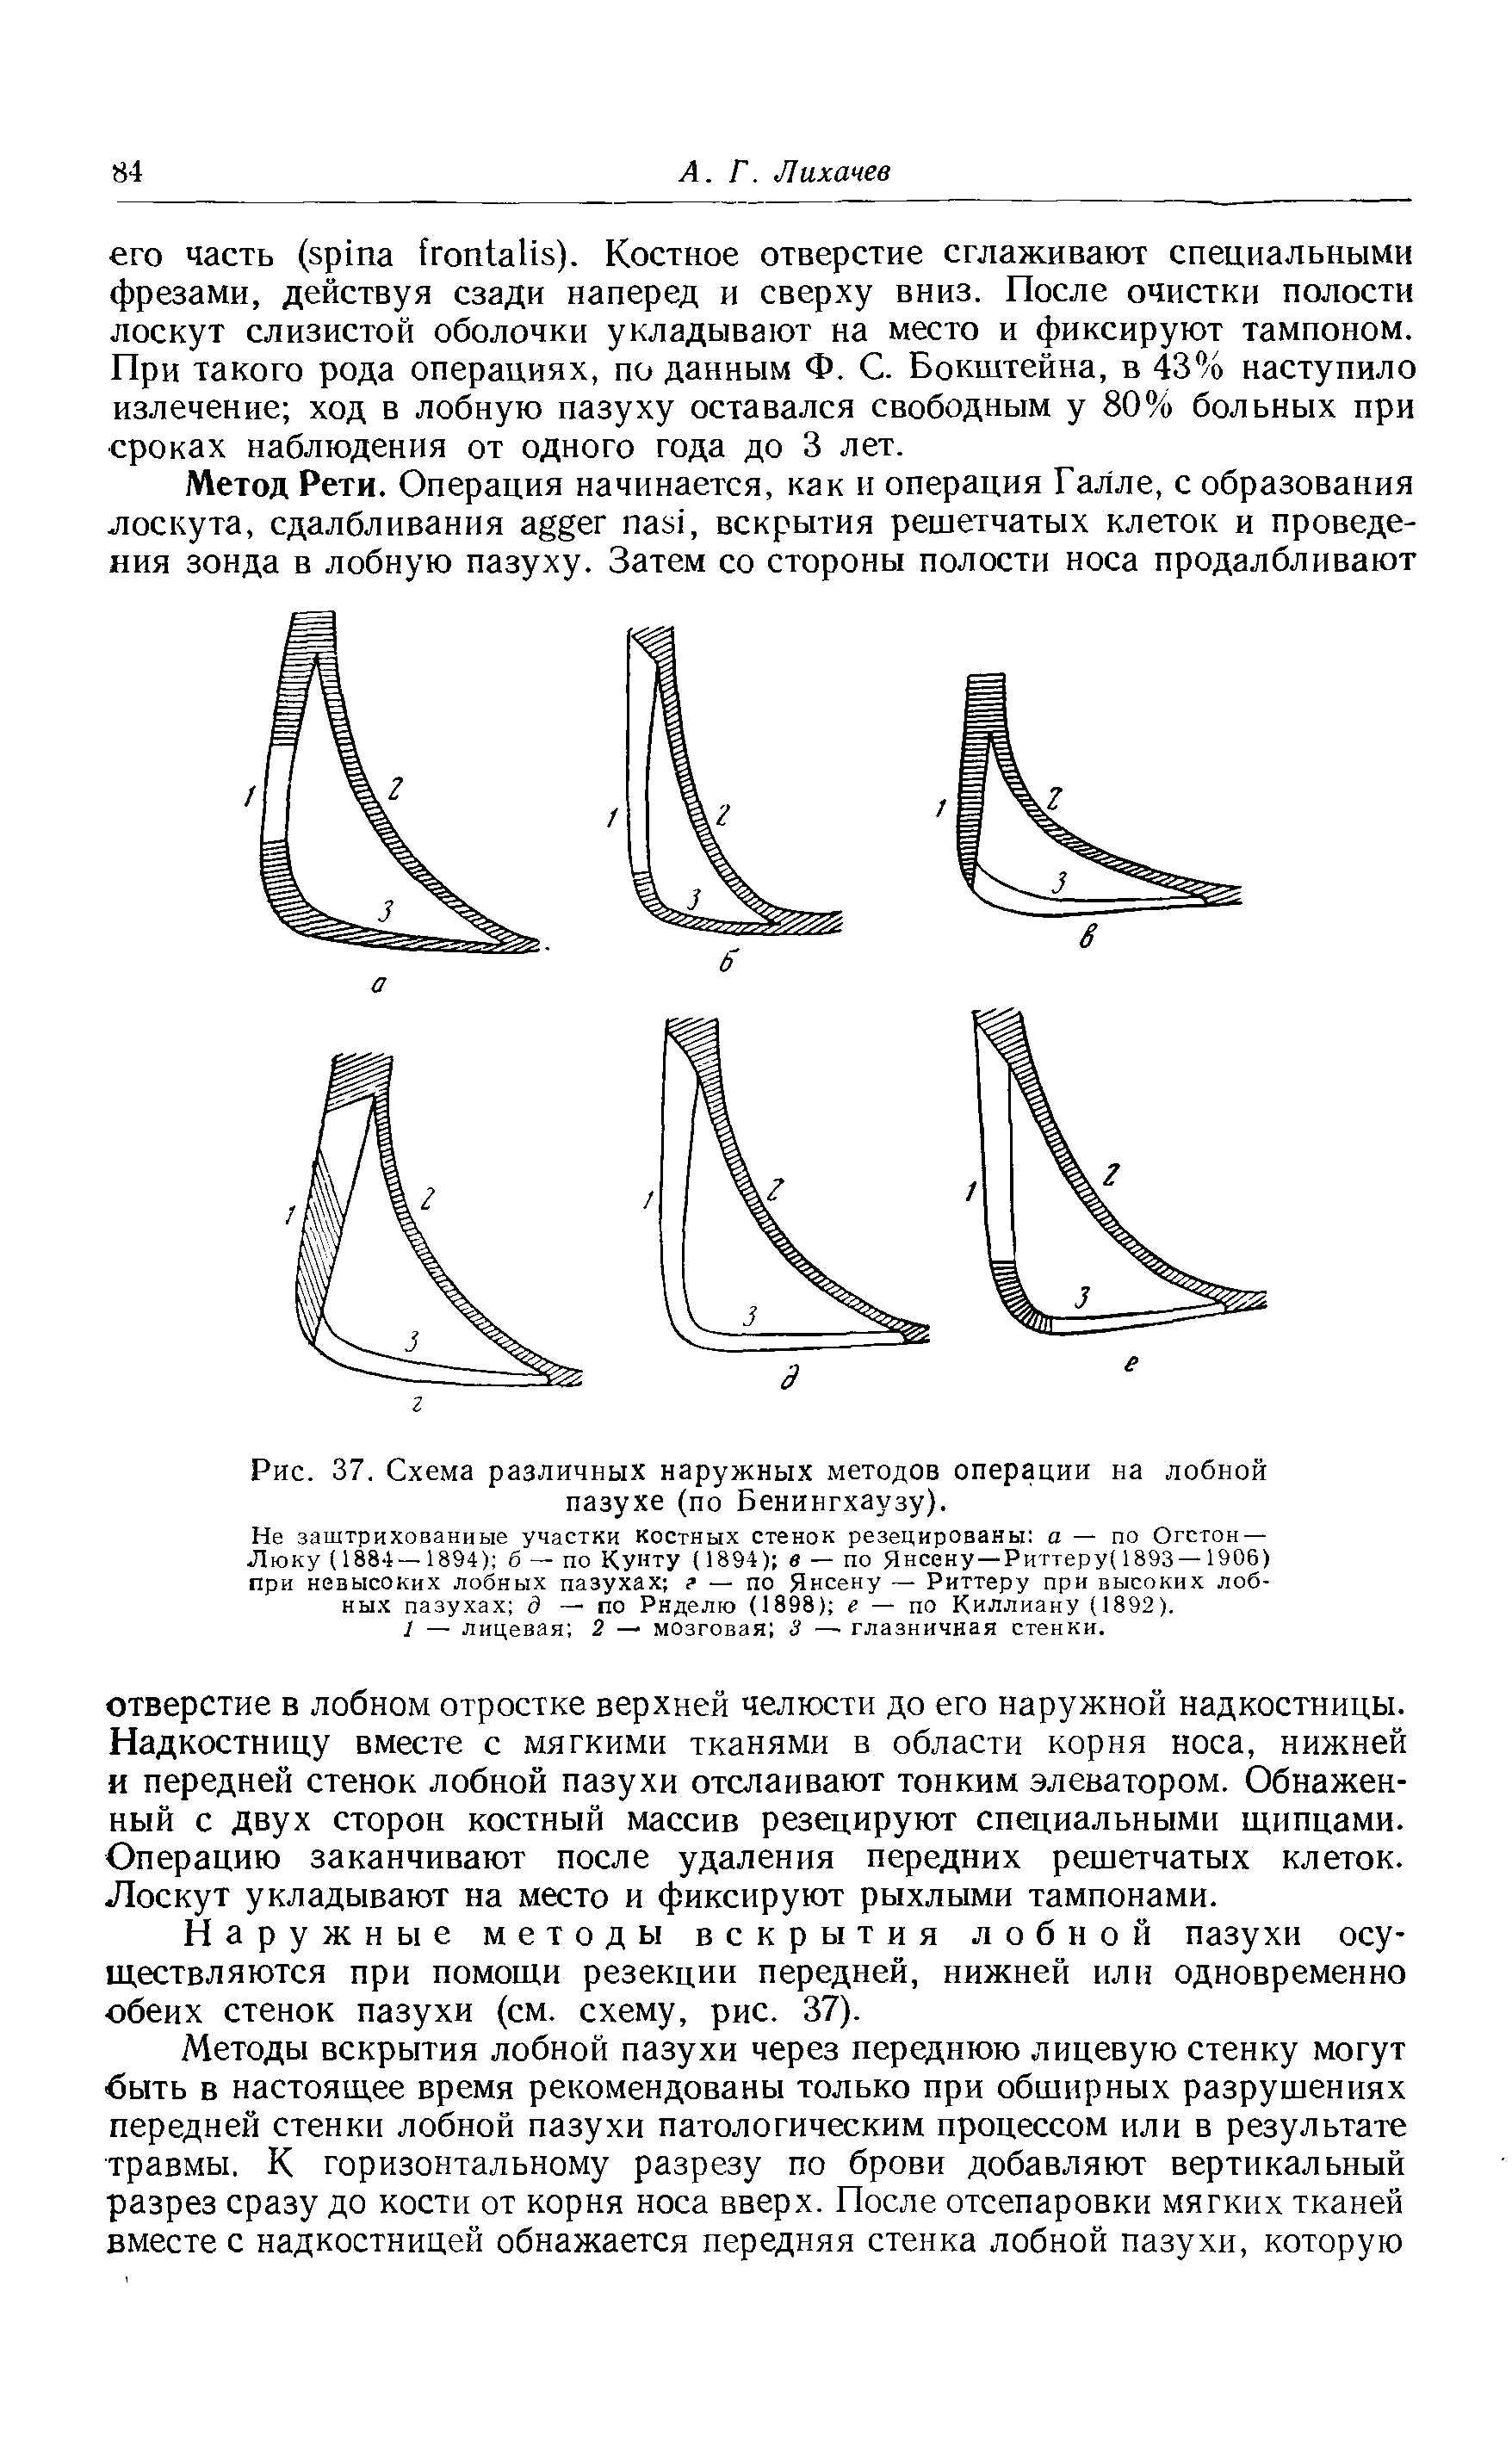 Рис. 37. Схема различных наружных методов операции на лобной пазухе (по Бенингхаузу).